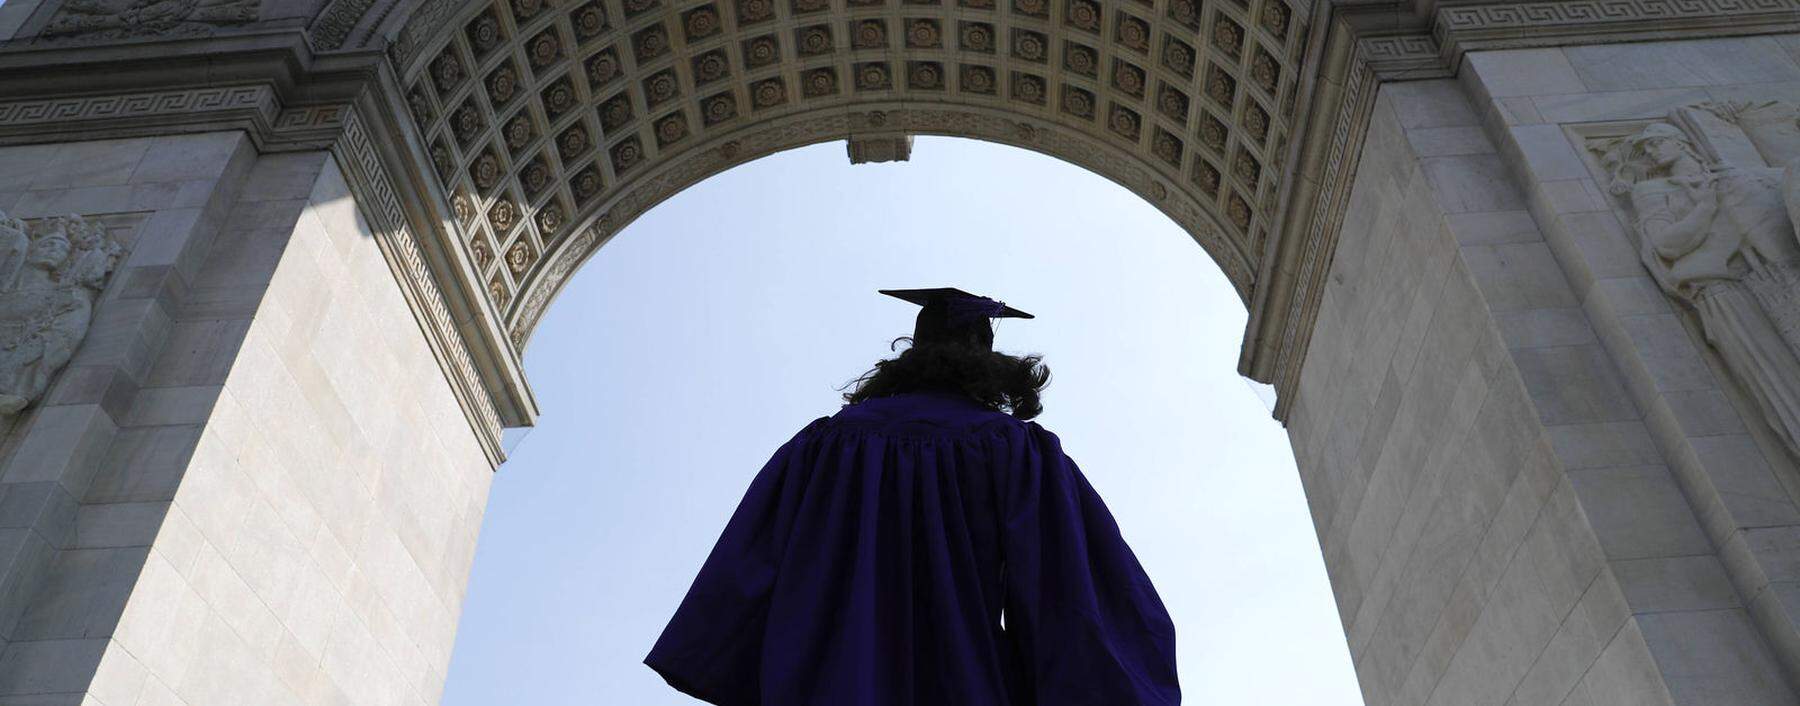 Die Wissenschaft feiert sich selbst, auch wenn Schatten auf sie fallen: Absolventen der New York University bei ihrer Promotion im Washington Square Park. 